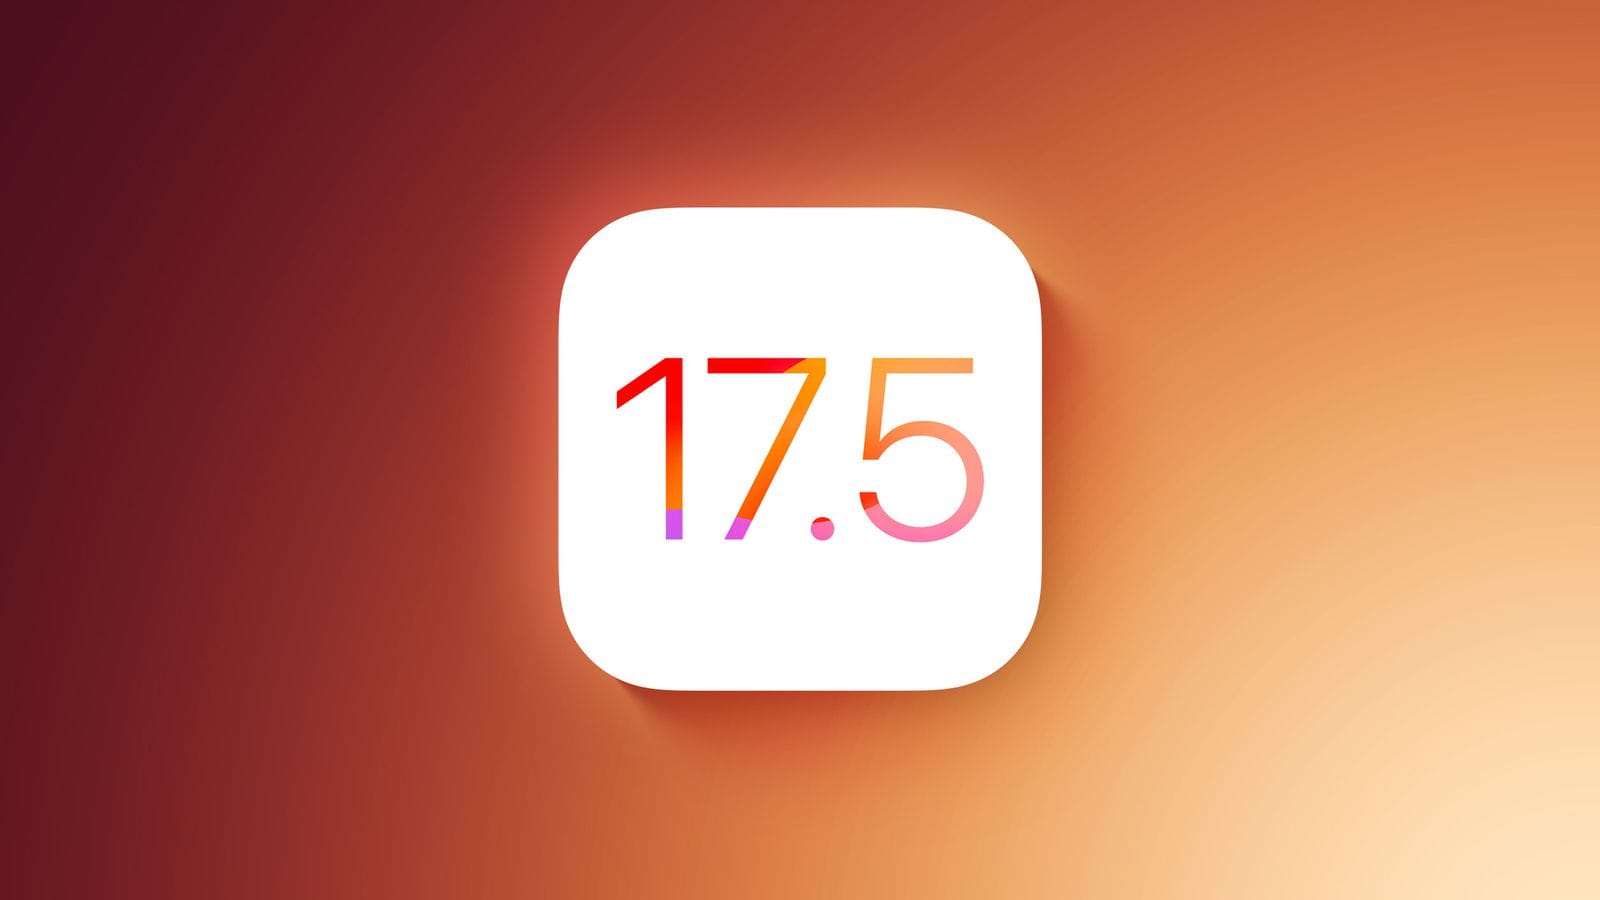 Пользователи жалуются, что ошибка в iOS 17.5 приводит к появлению старых удалённых фотографий